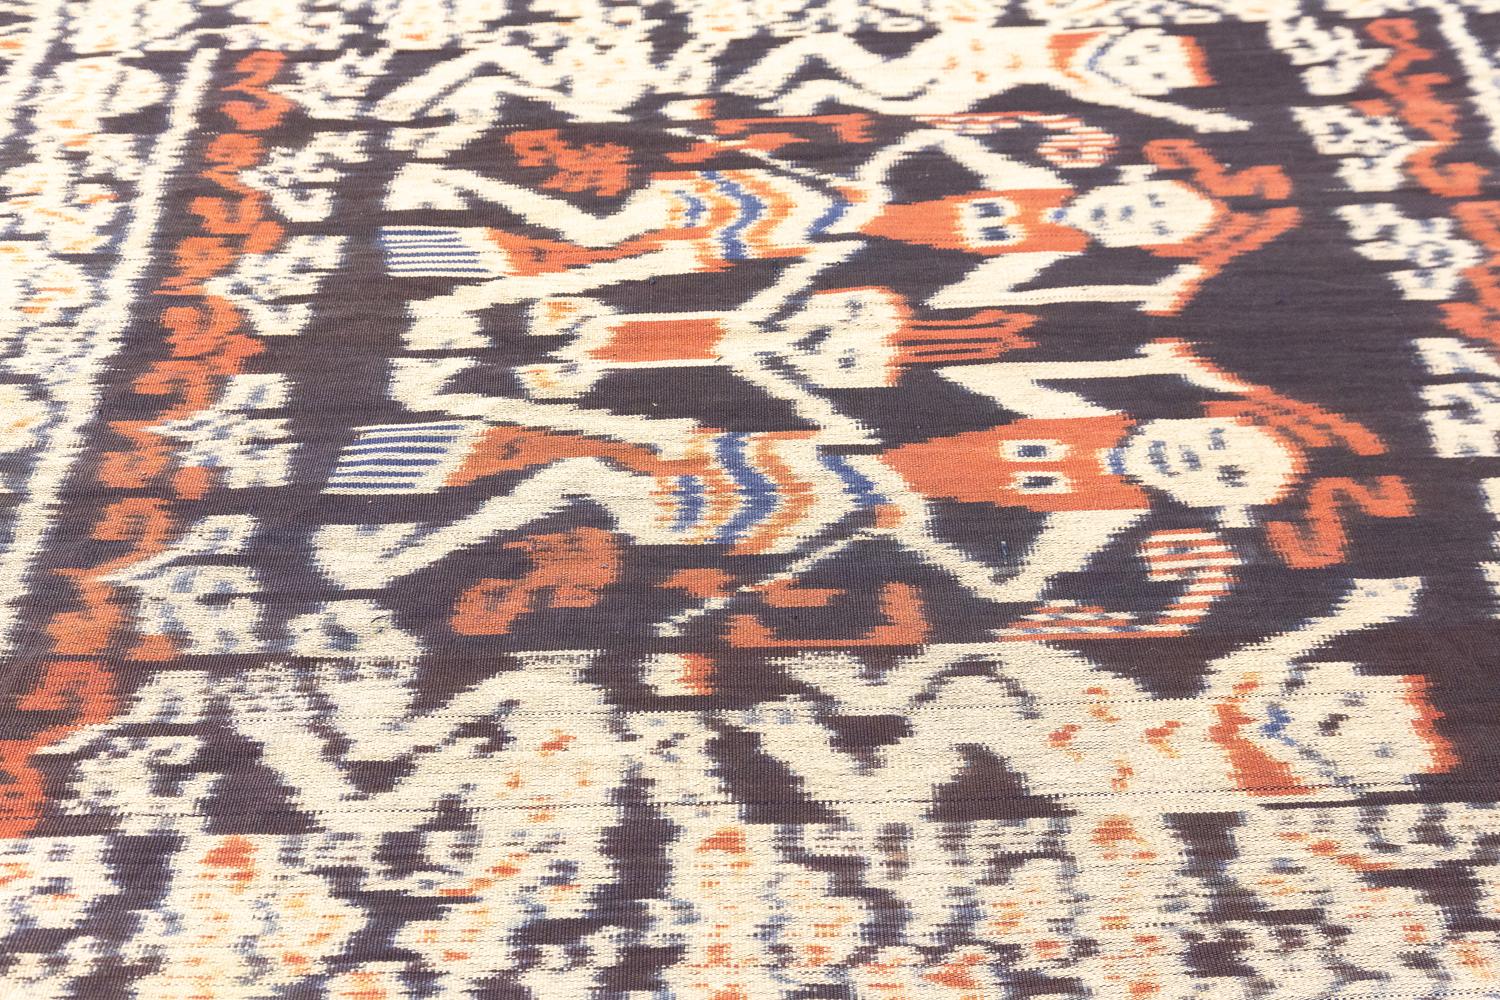 Dies ist ein antikes indonesisches Textil, das Ende des 19. Jahrhunderts um 1890-1900 gewebt wurde und die Maße 100x 54CM hat. Dieses einzigartige Textil zeigt ein malerisches Design mit zwei tanzenden Frauen, die sich gegenüberstehen und ein Baby